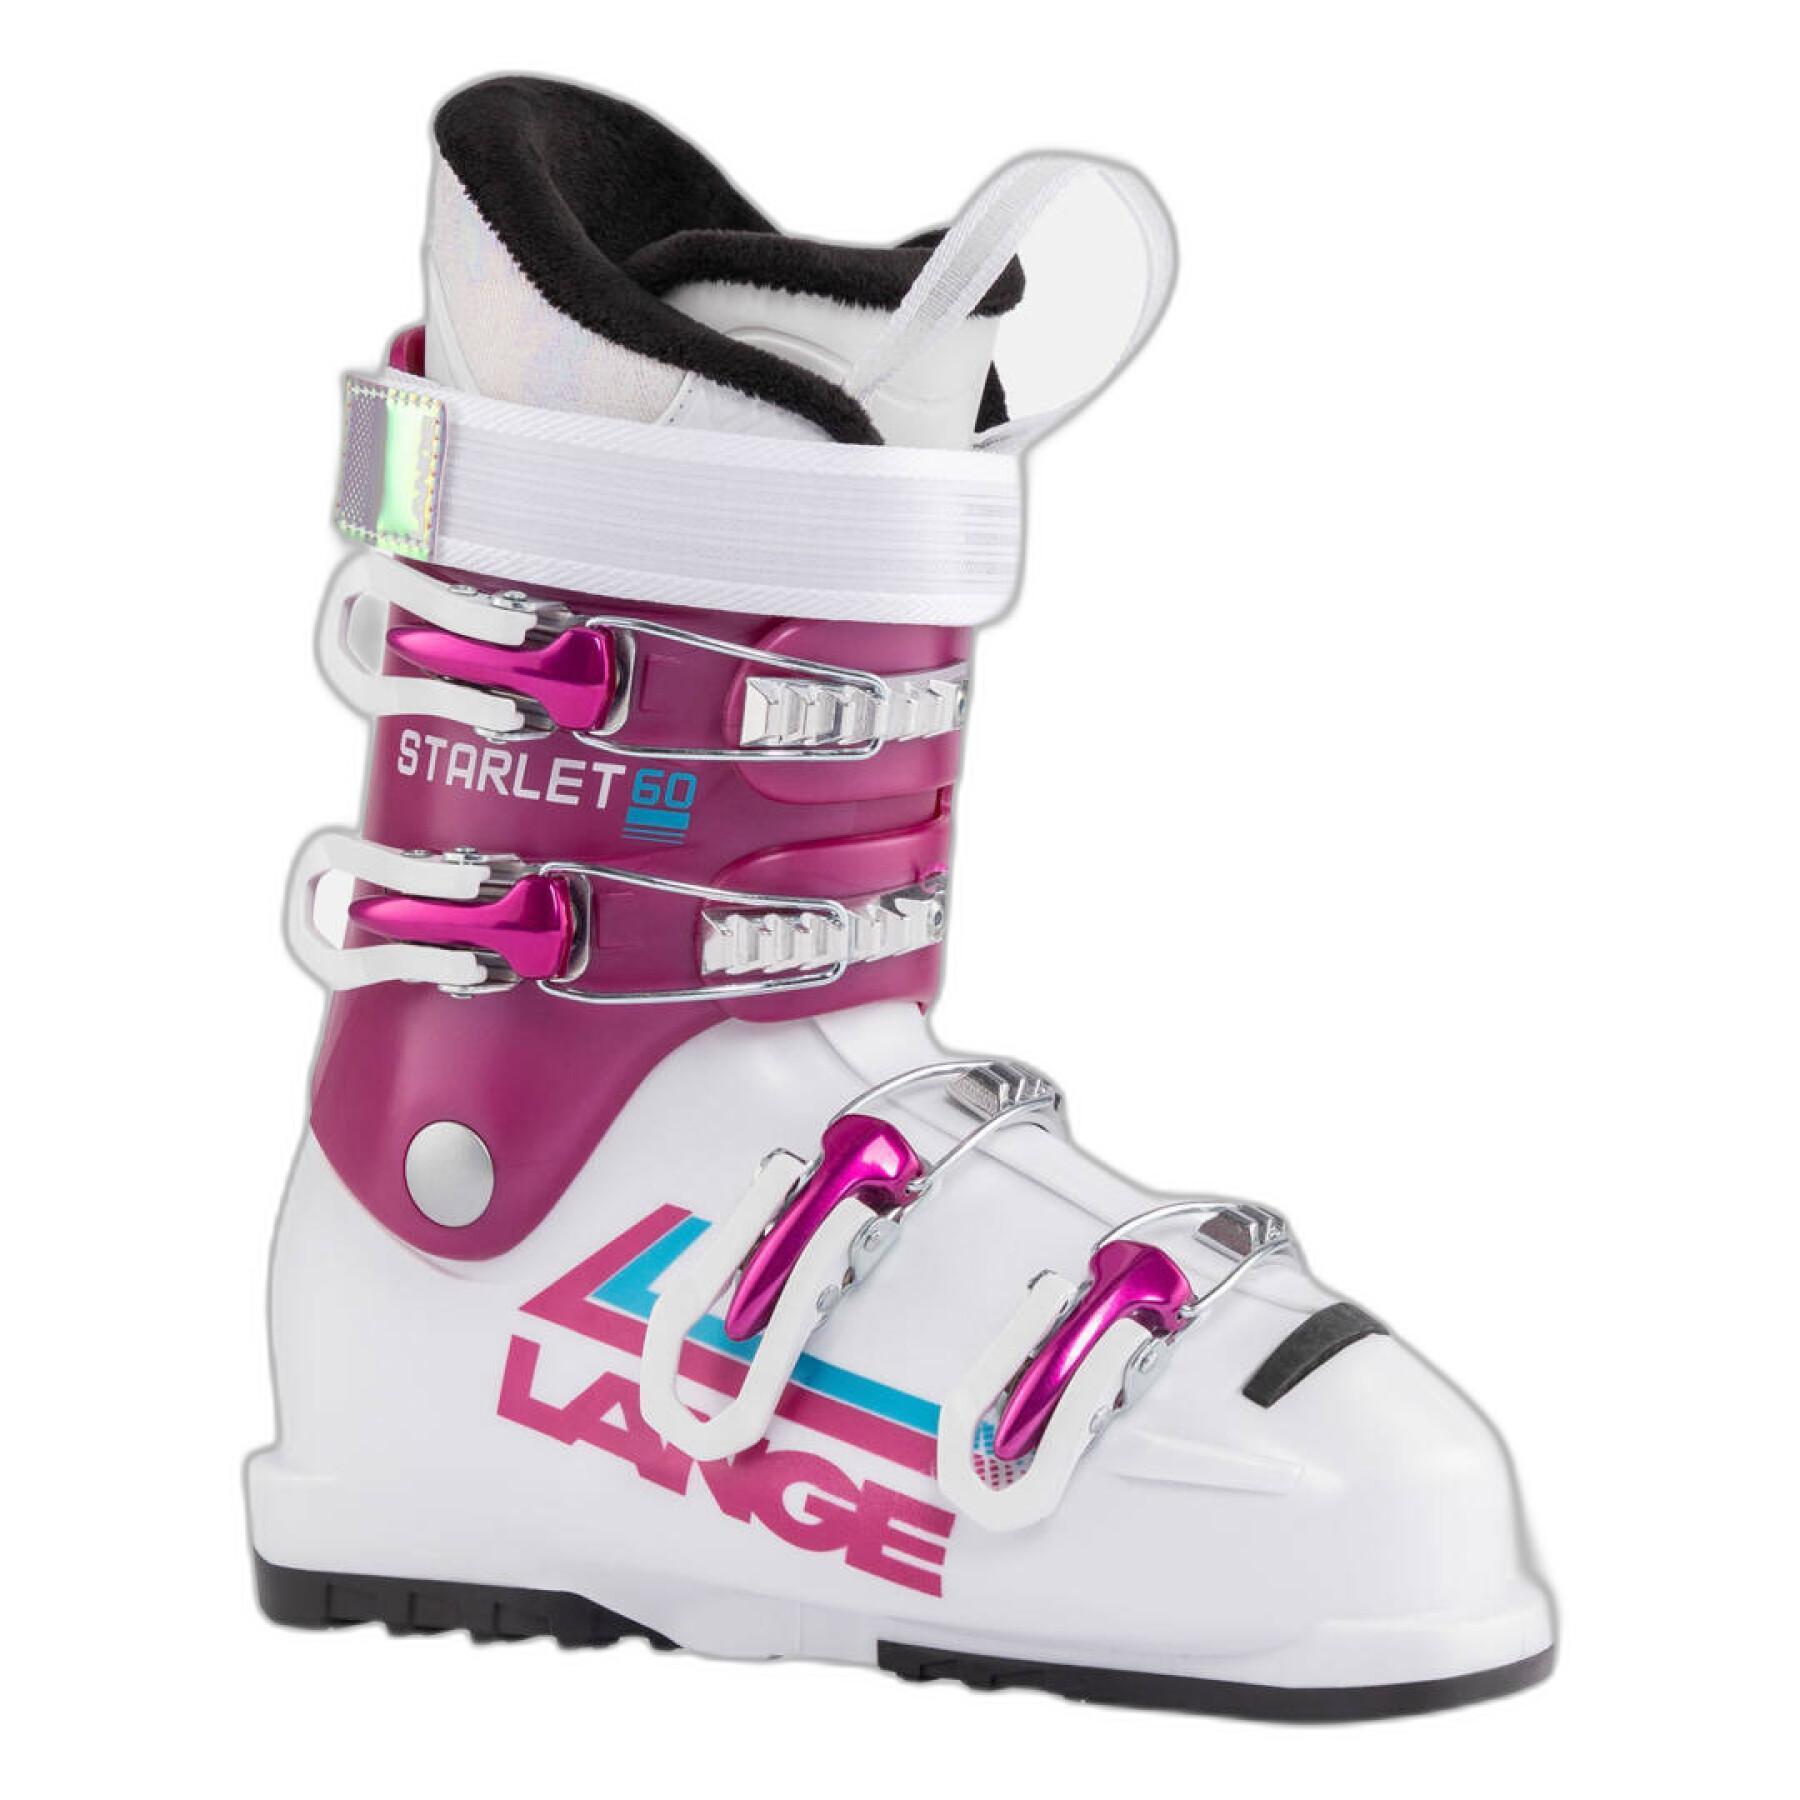 Chaussures de ski enfant Lange STARLET 50